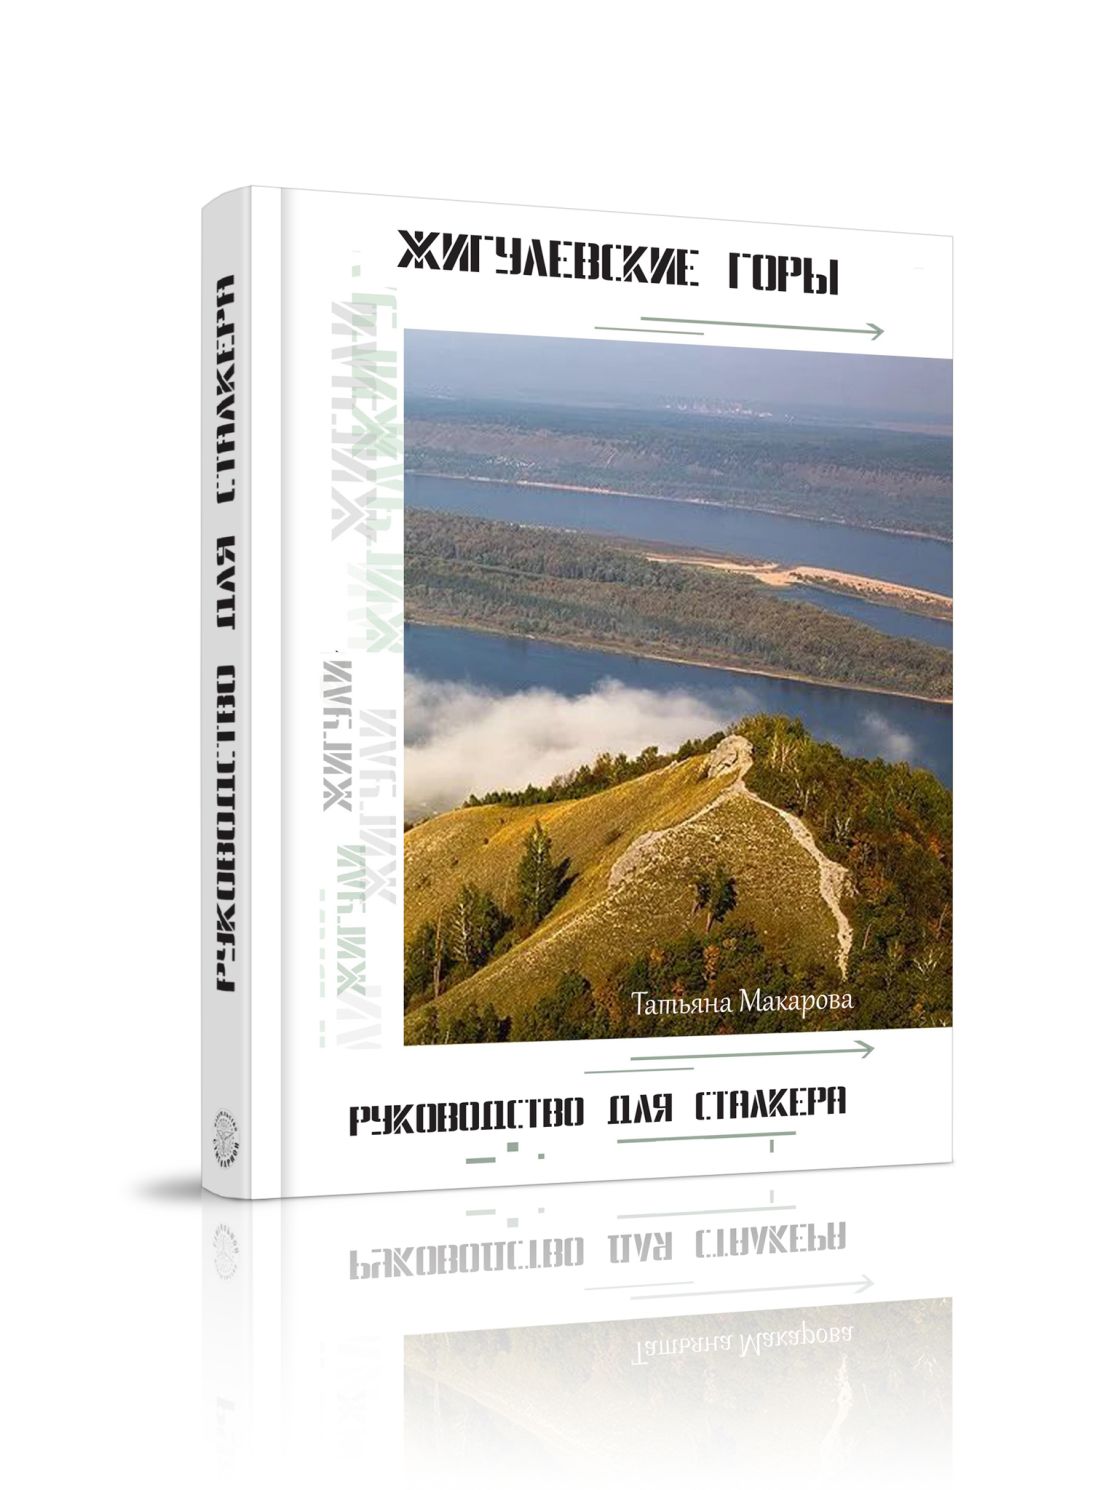 Т.Макарова - Пособие "Жигулёвские горы. Руководство для сталкеров"